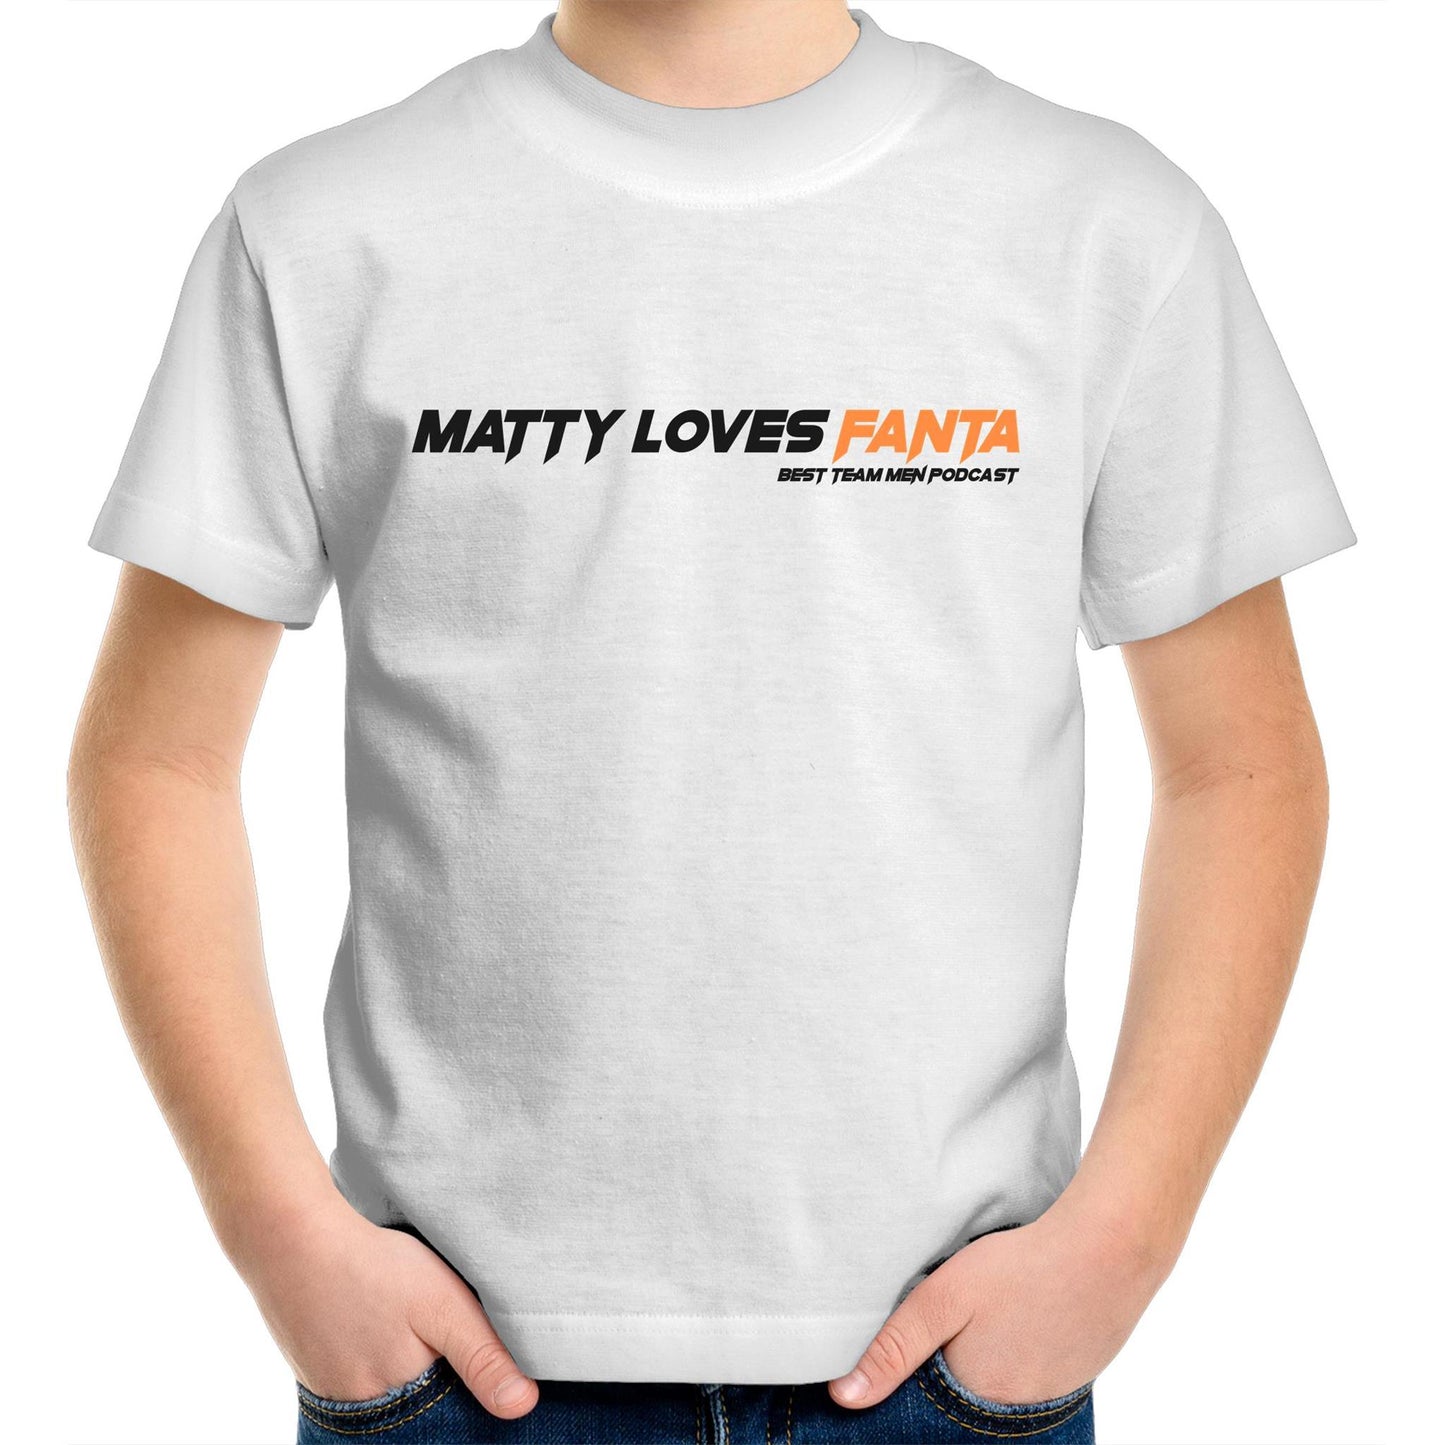 Matty Loves Fanta - Best Team Men - AS Colour Kids Youth Crew T-Shirt